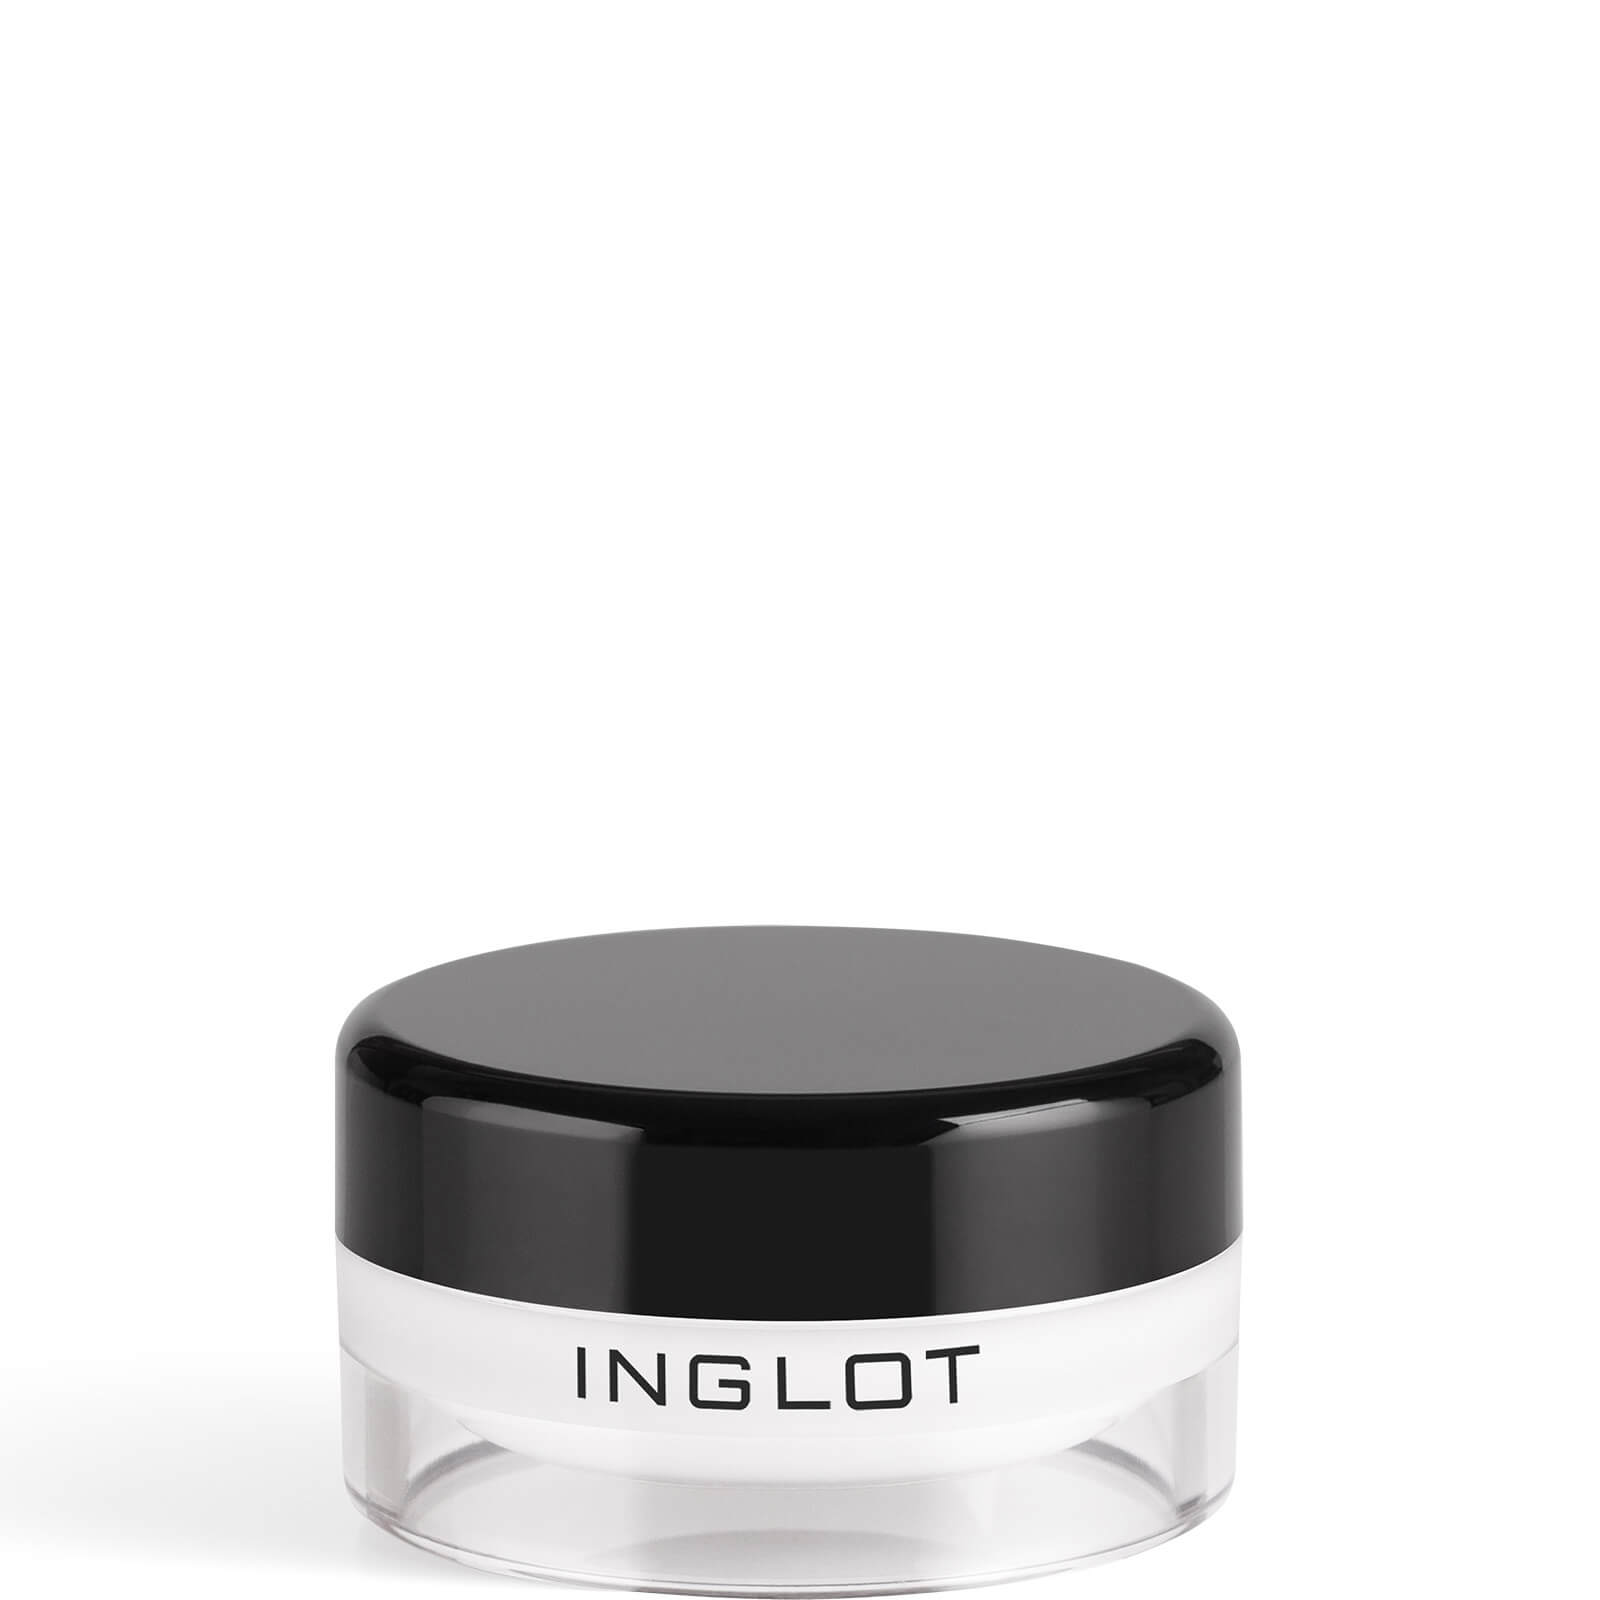 inglot amc eyeliner gel 5.5g (various shades) - 76 donna